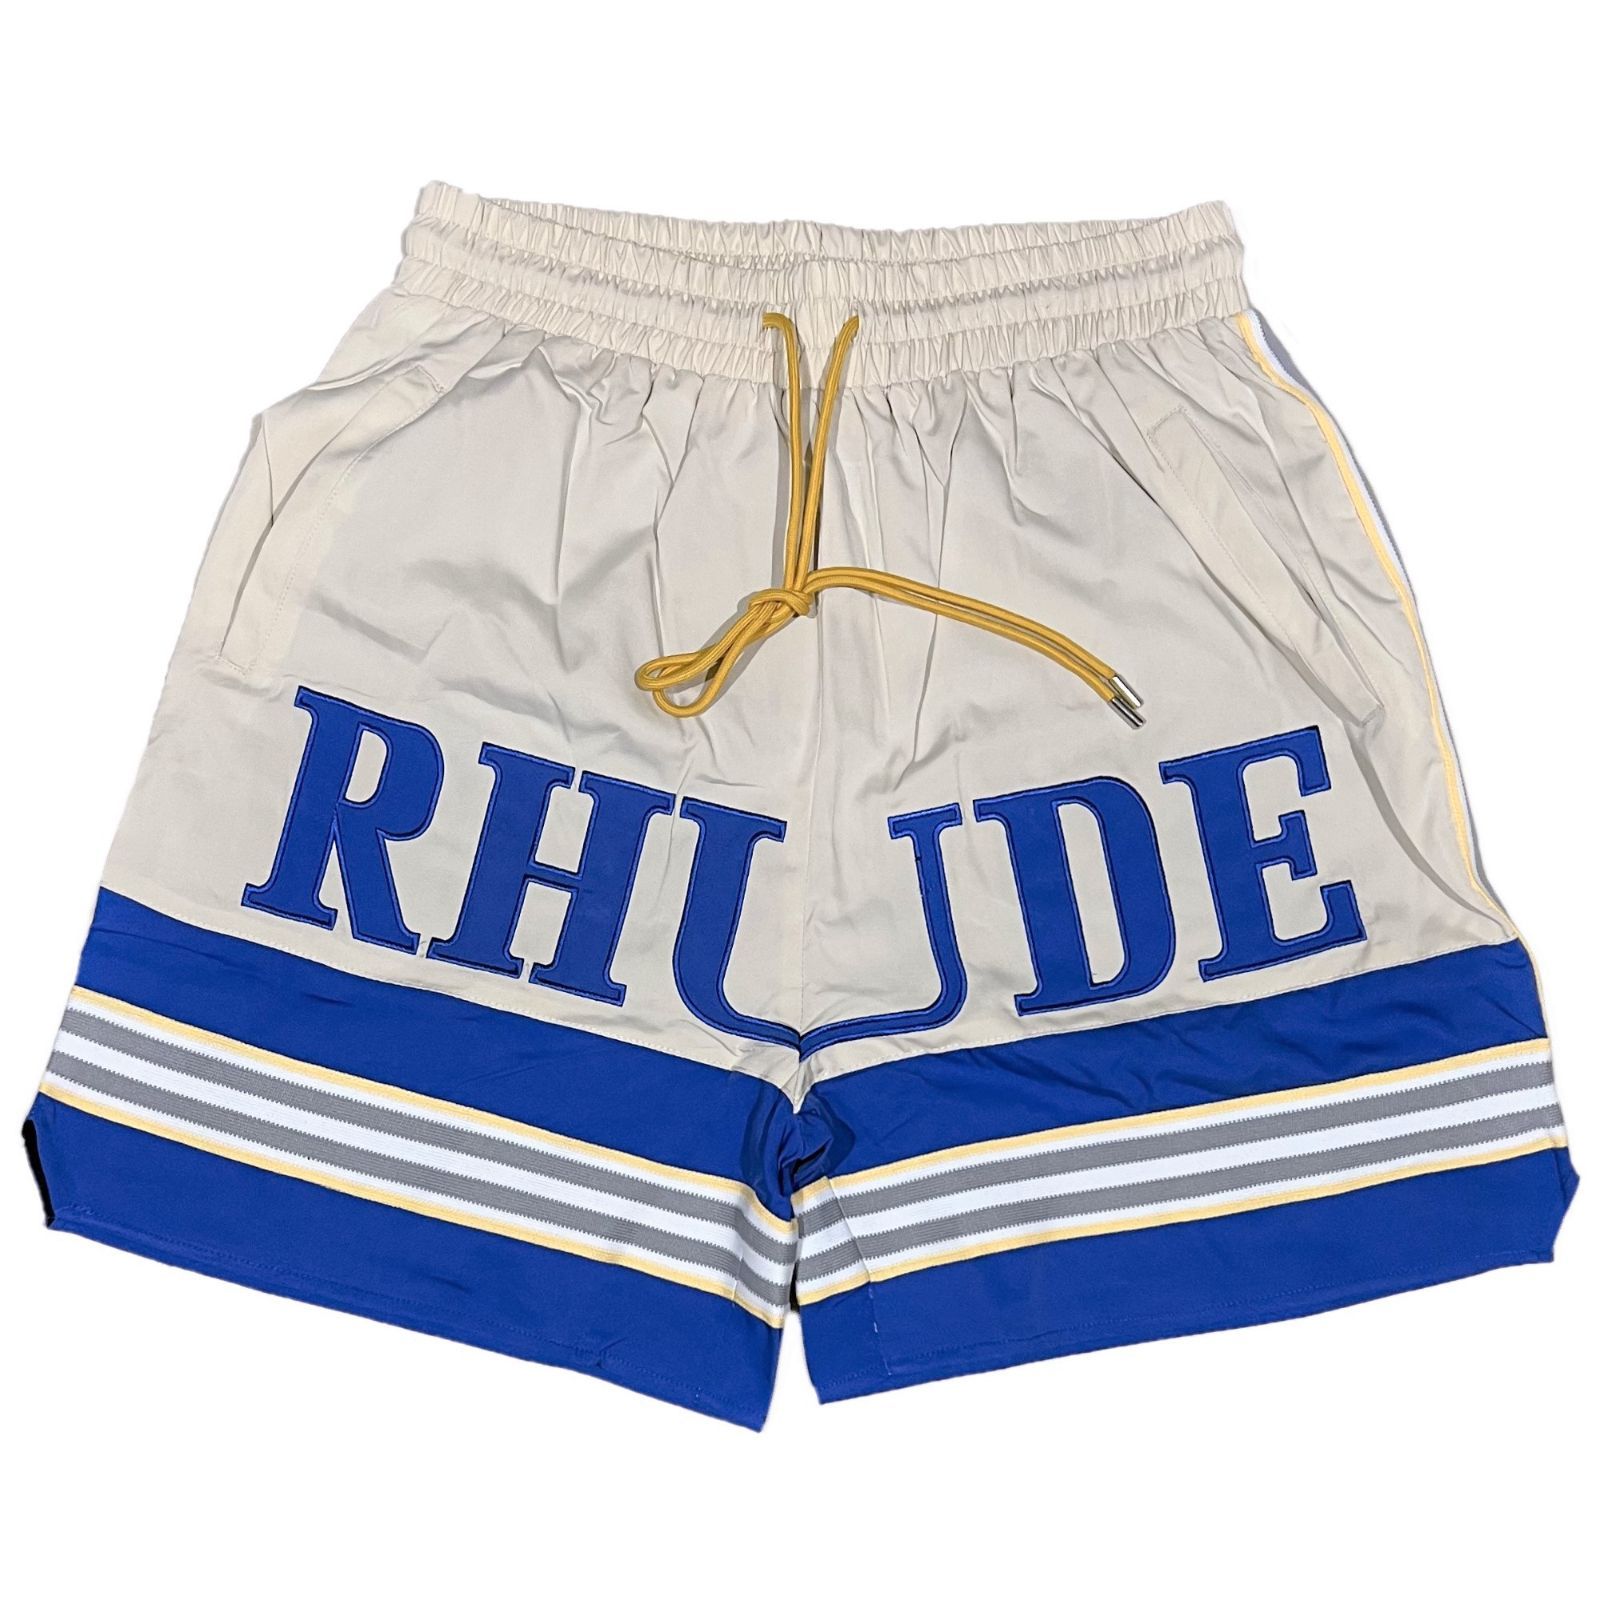 RHUDE ルード SAILING セーリング ショートパンツ ブルー - メルカリ